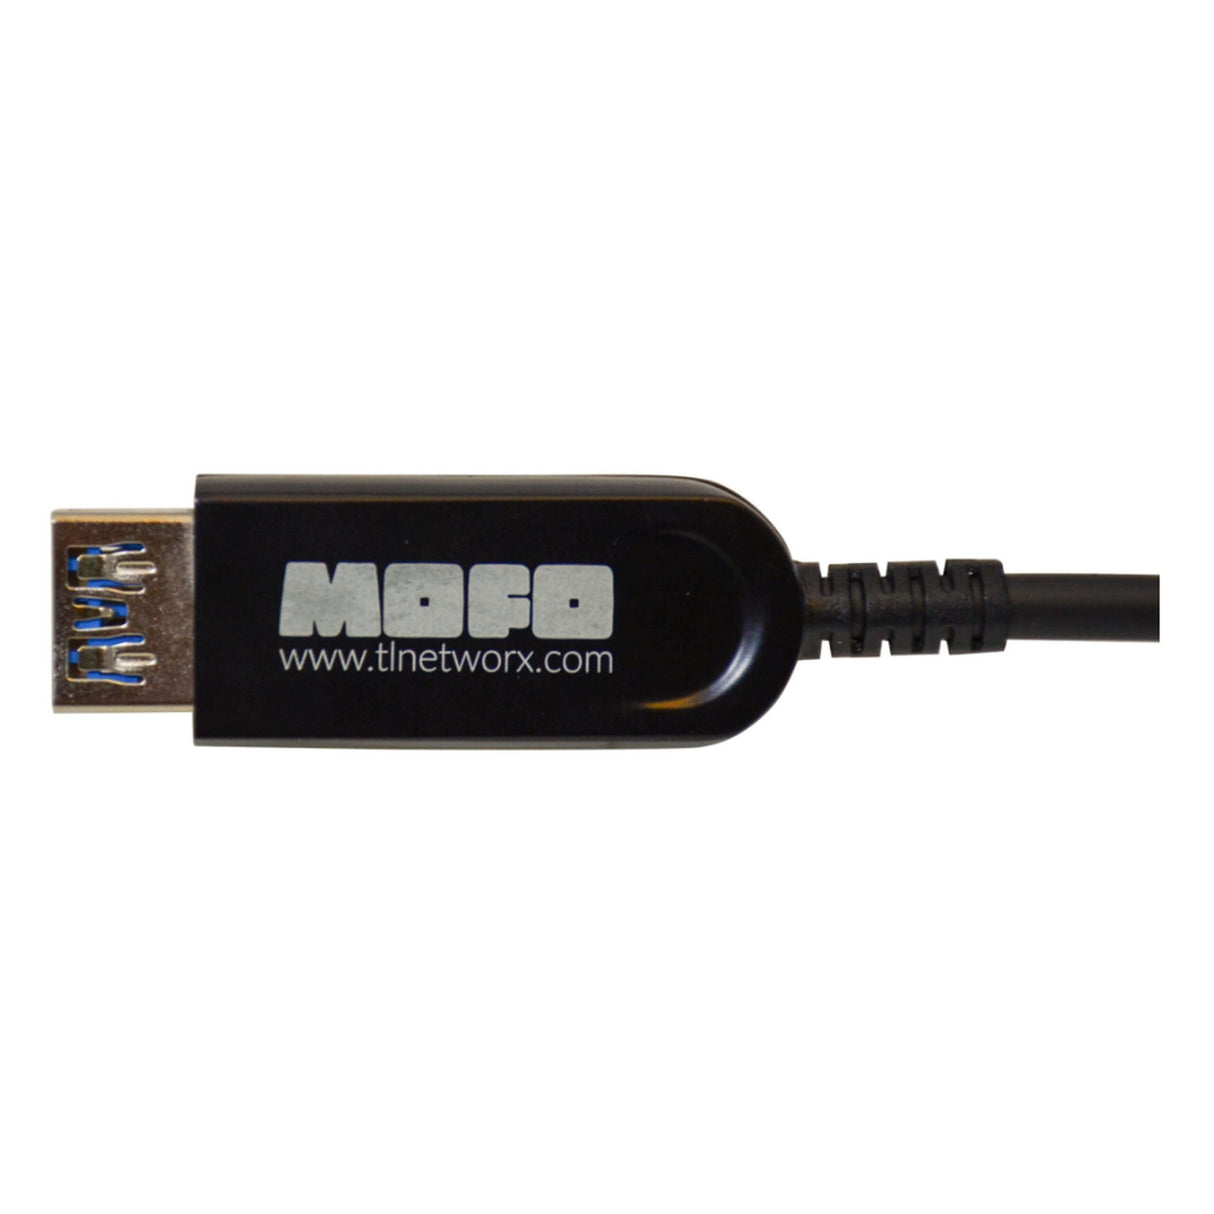 LYNN AV & Security Techlogix Networx MOFO-USB3-10 MOFO Media Over Fiber Optic USB 3.0 Male to Female, 10m